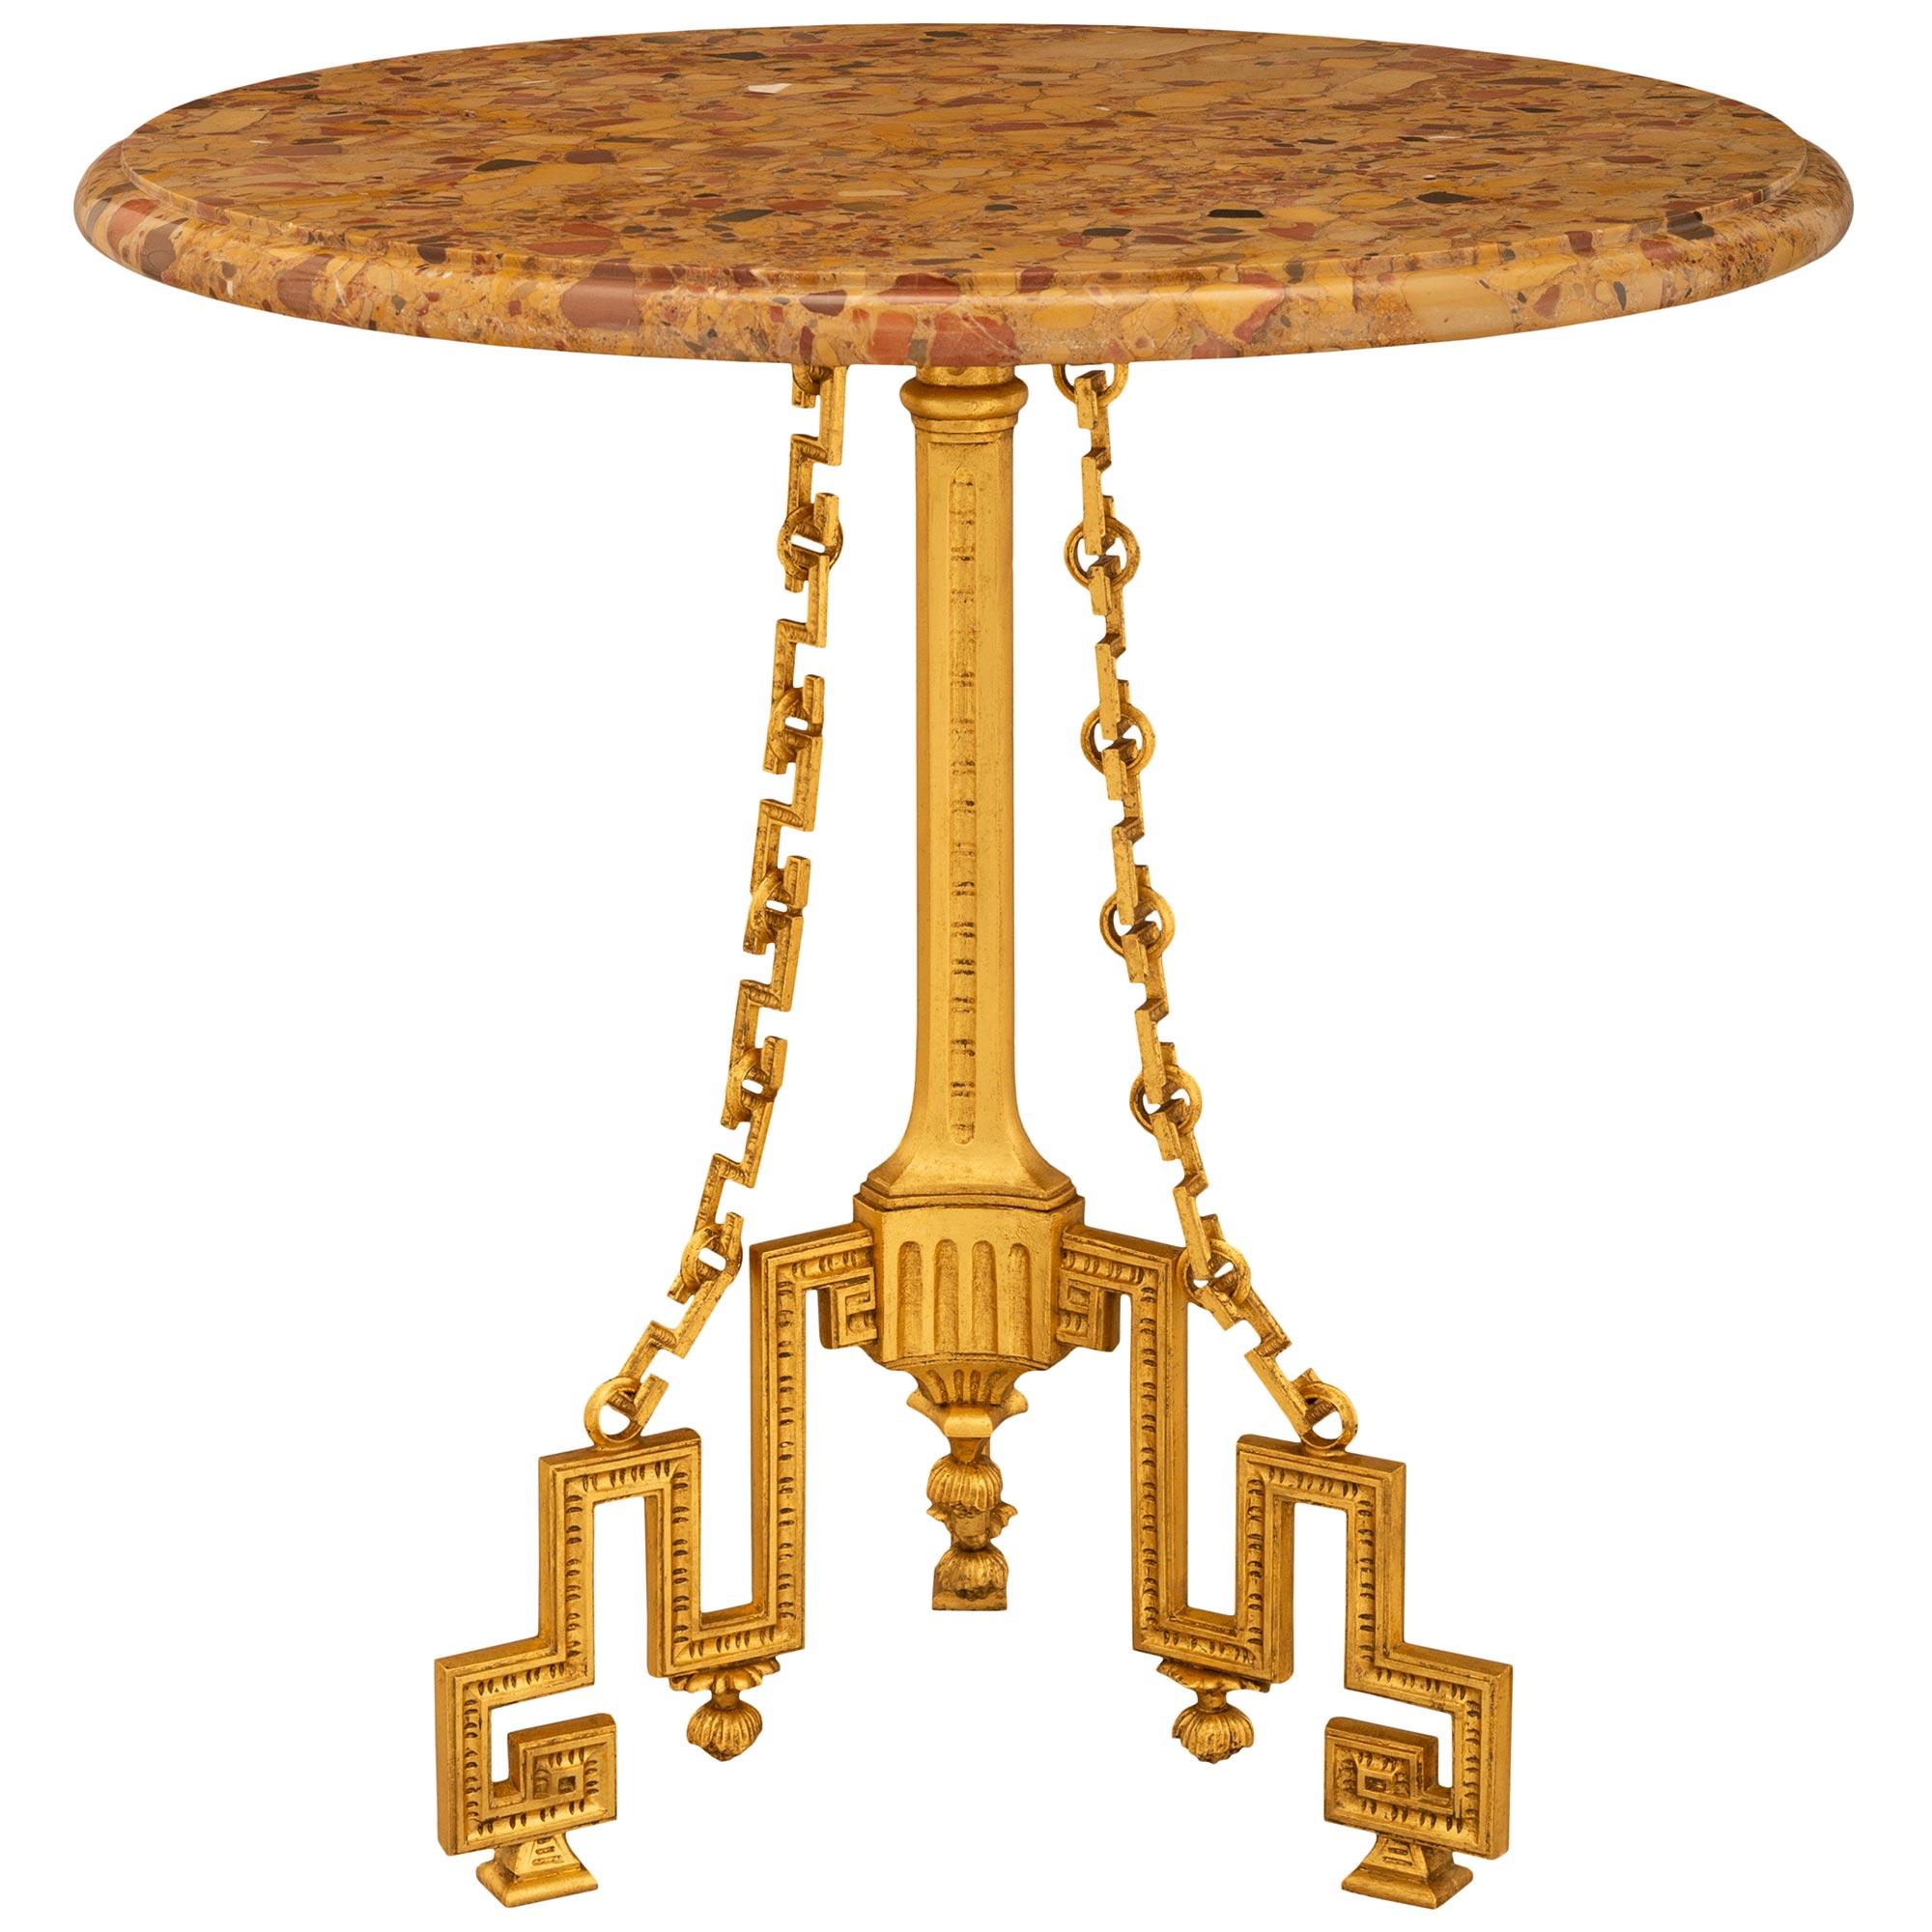 Superbe et unique table d'appoint Guéridon en bronze doré et marbre Brèche d'Alep de style Louis XVI du XIXe siècle. Cette superbe table est surélevée par trois pieds en bronze doré à clé grecque avec des supports carrés. Chaque pied présente un